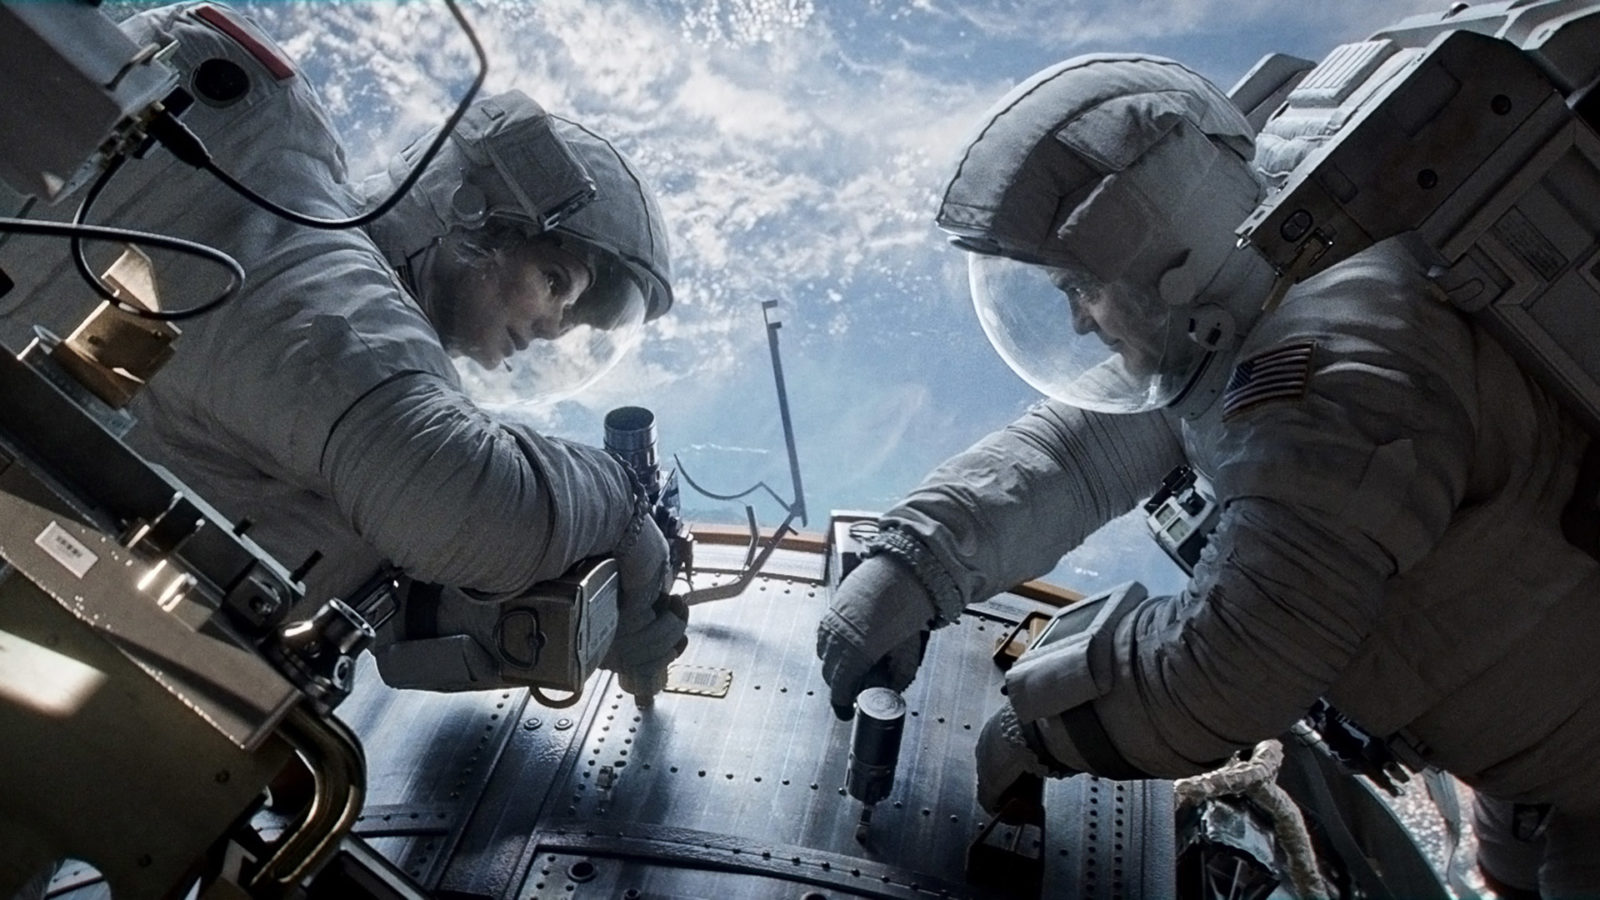 Filmstill aus dem Film: Gravity. Zwei Astronauten benutzen Werkzeuge.